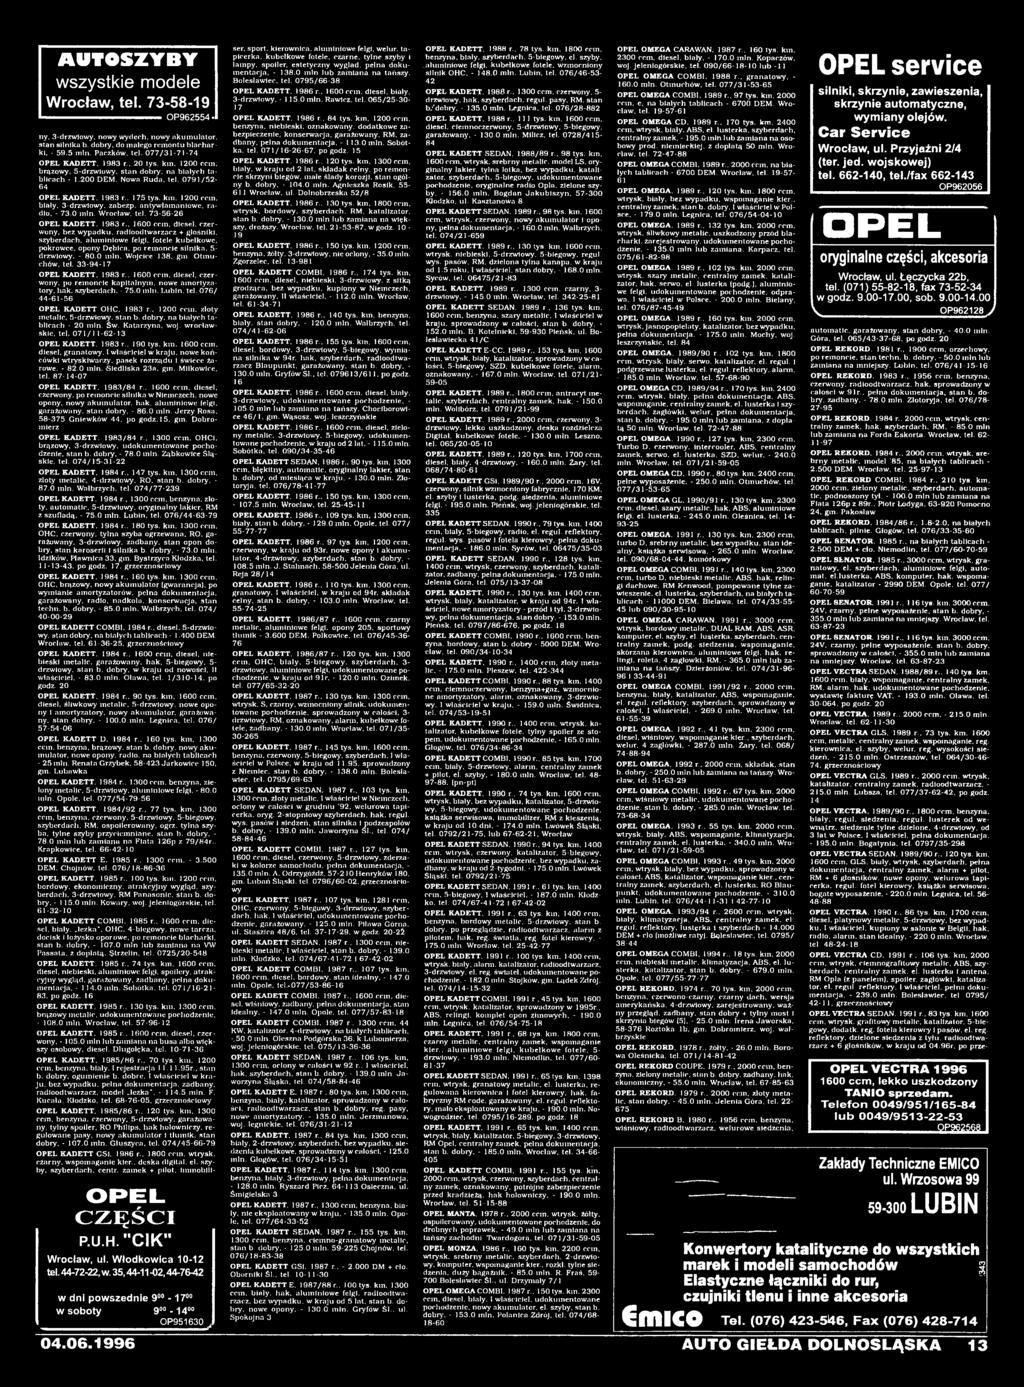 33-94-17 OPEL KADETT. 1983 r.. 1600 ccm. diesel, czerwony. po remoncie kapitalnym, nowe amortyzatory. hak. szyberdach. - 75.0 min. Lubin. tel. 076/ 44-61-56 OPEL KADETT OHC, 1983 r.. 1200 ccm.